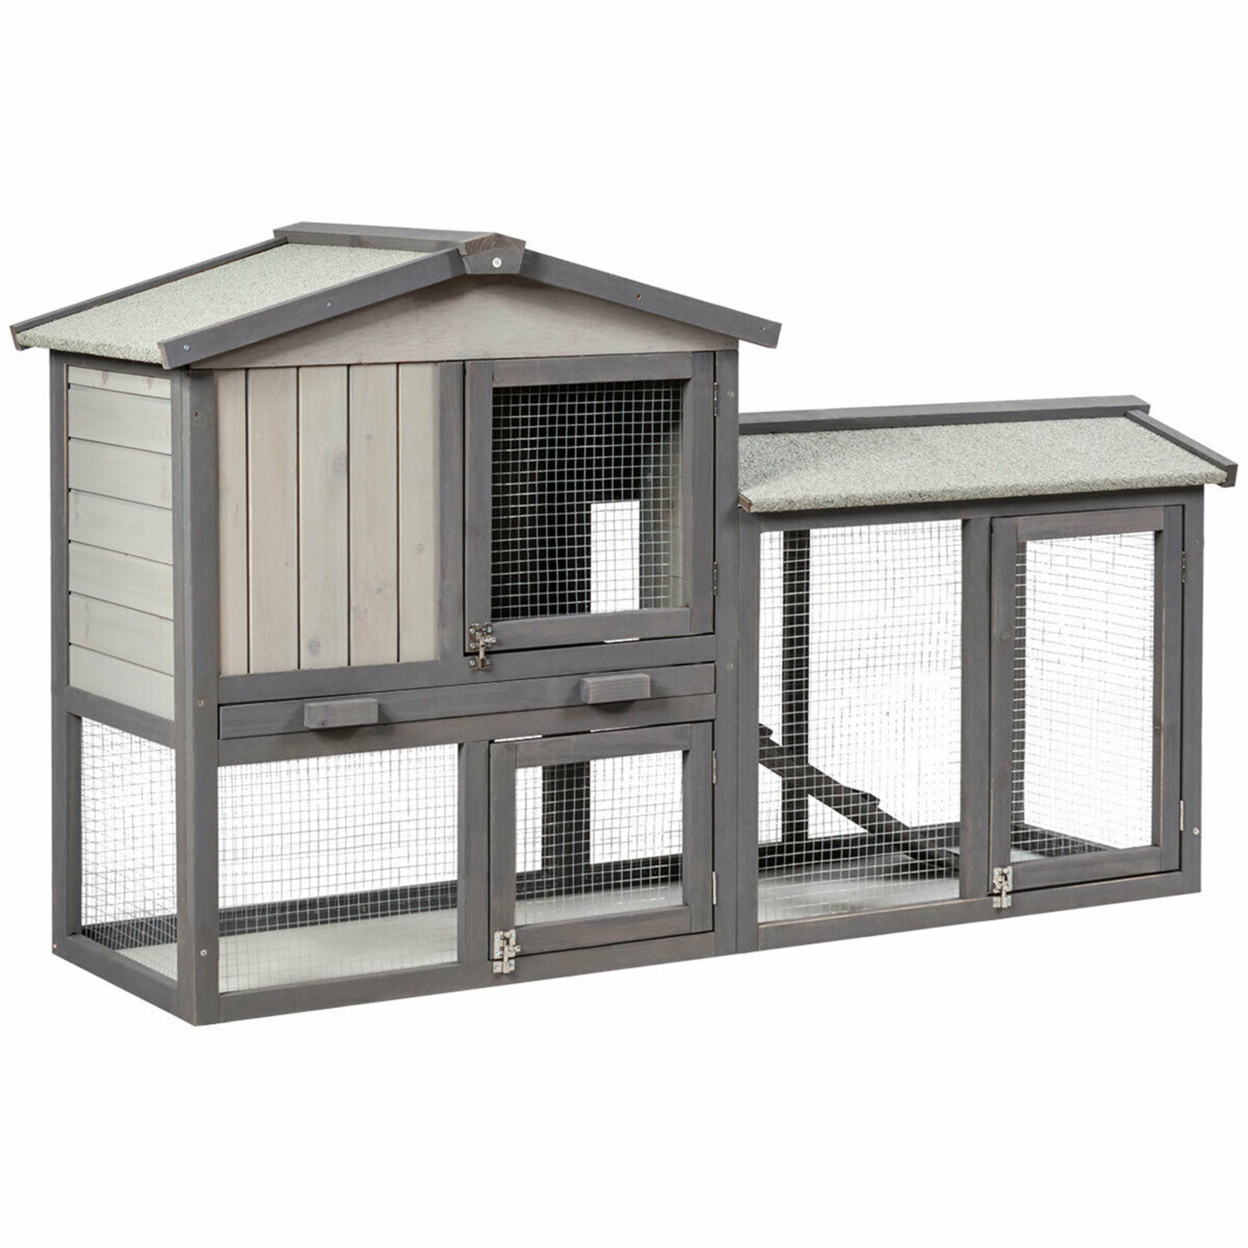 58'' Wooden Rabbit Hutch Large Chicken Coop Weatherproof Indoor Outdoor Use Gray